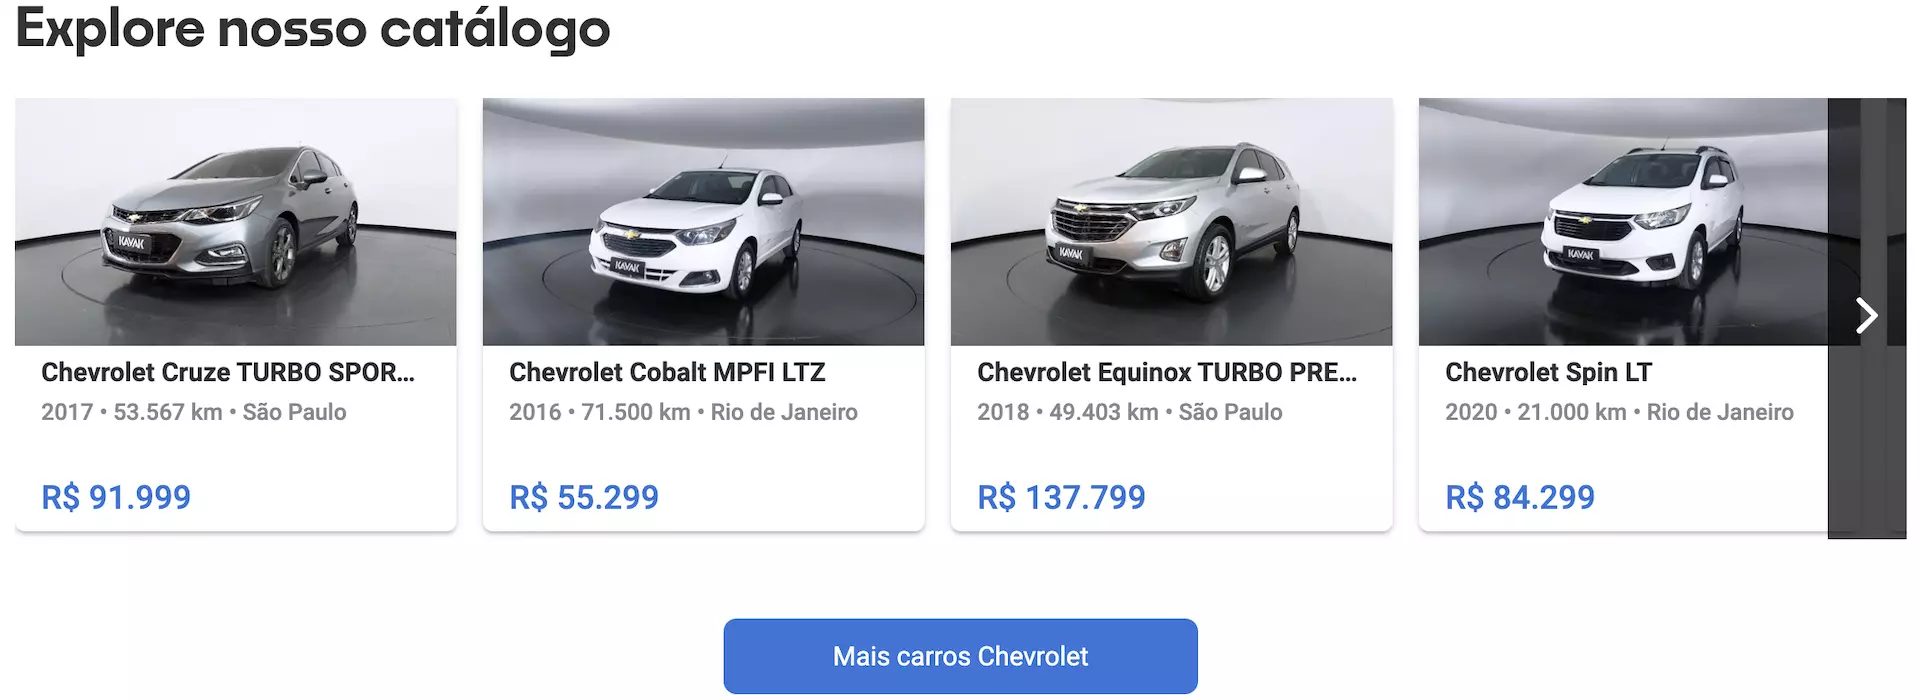 Carros Chevrolet preço